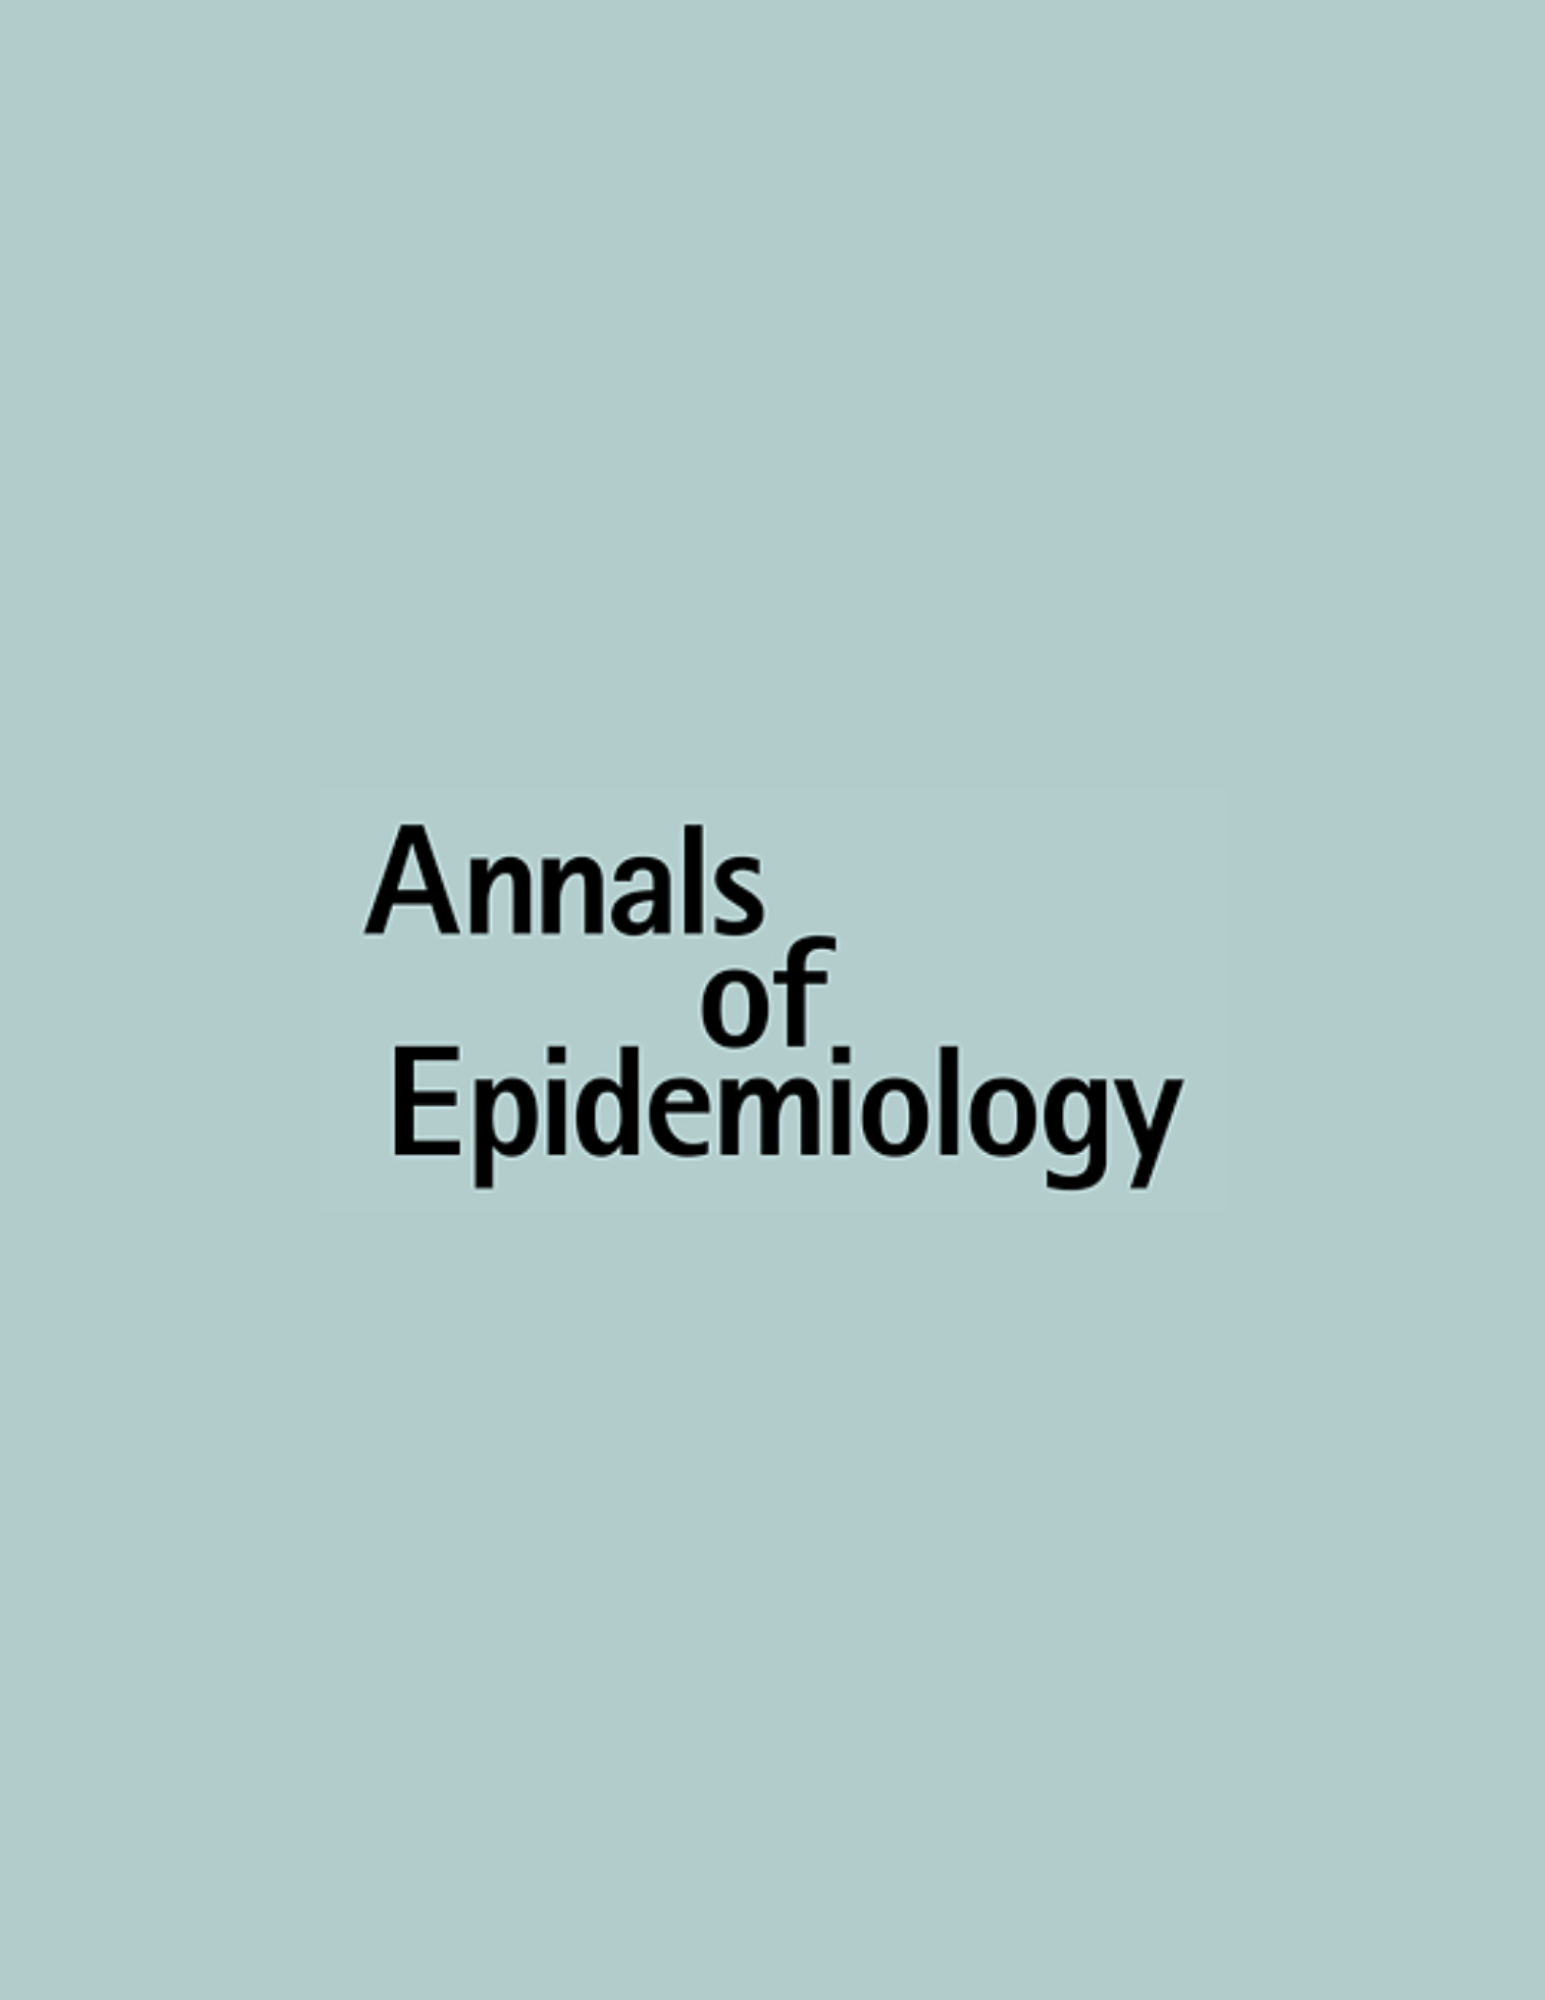 Annals of epidemiology journal